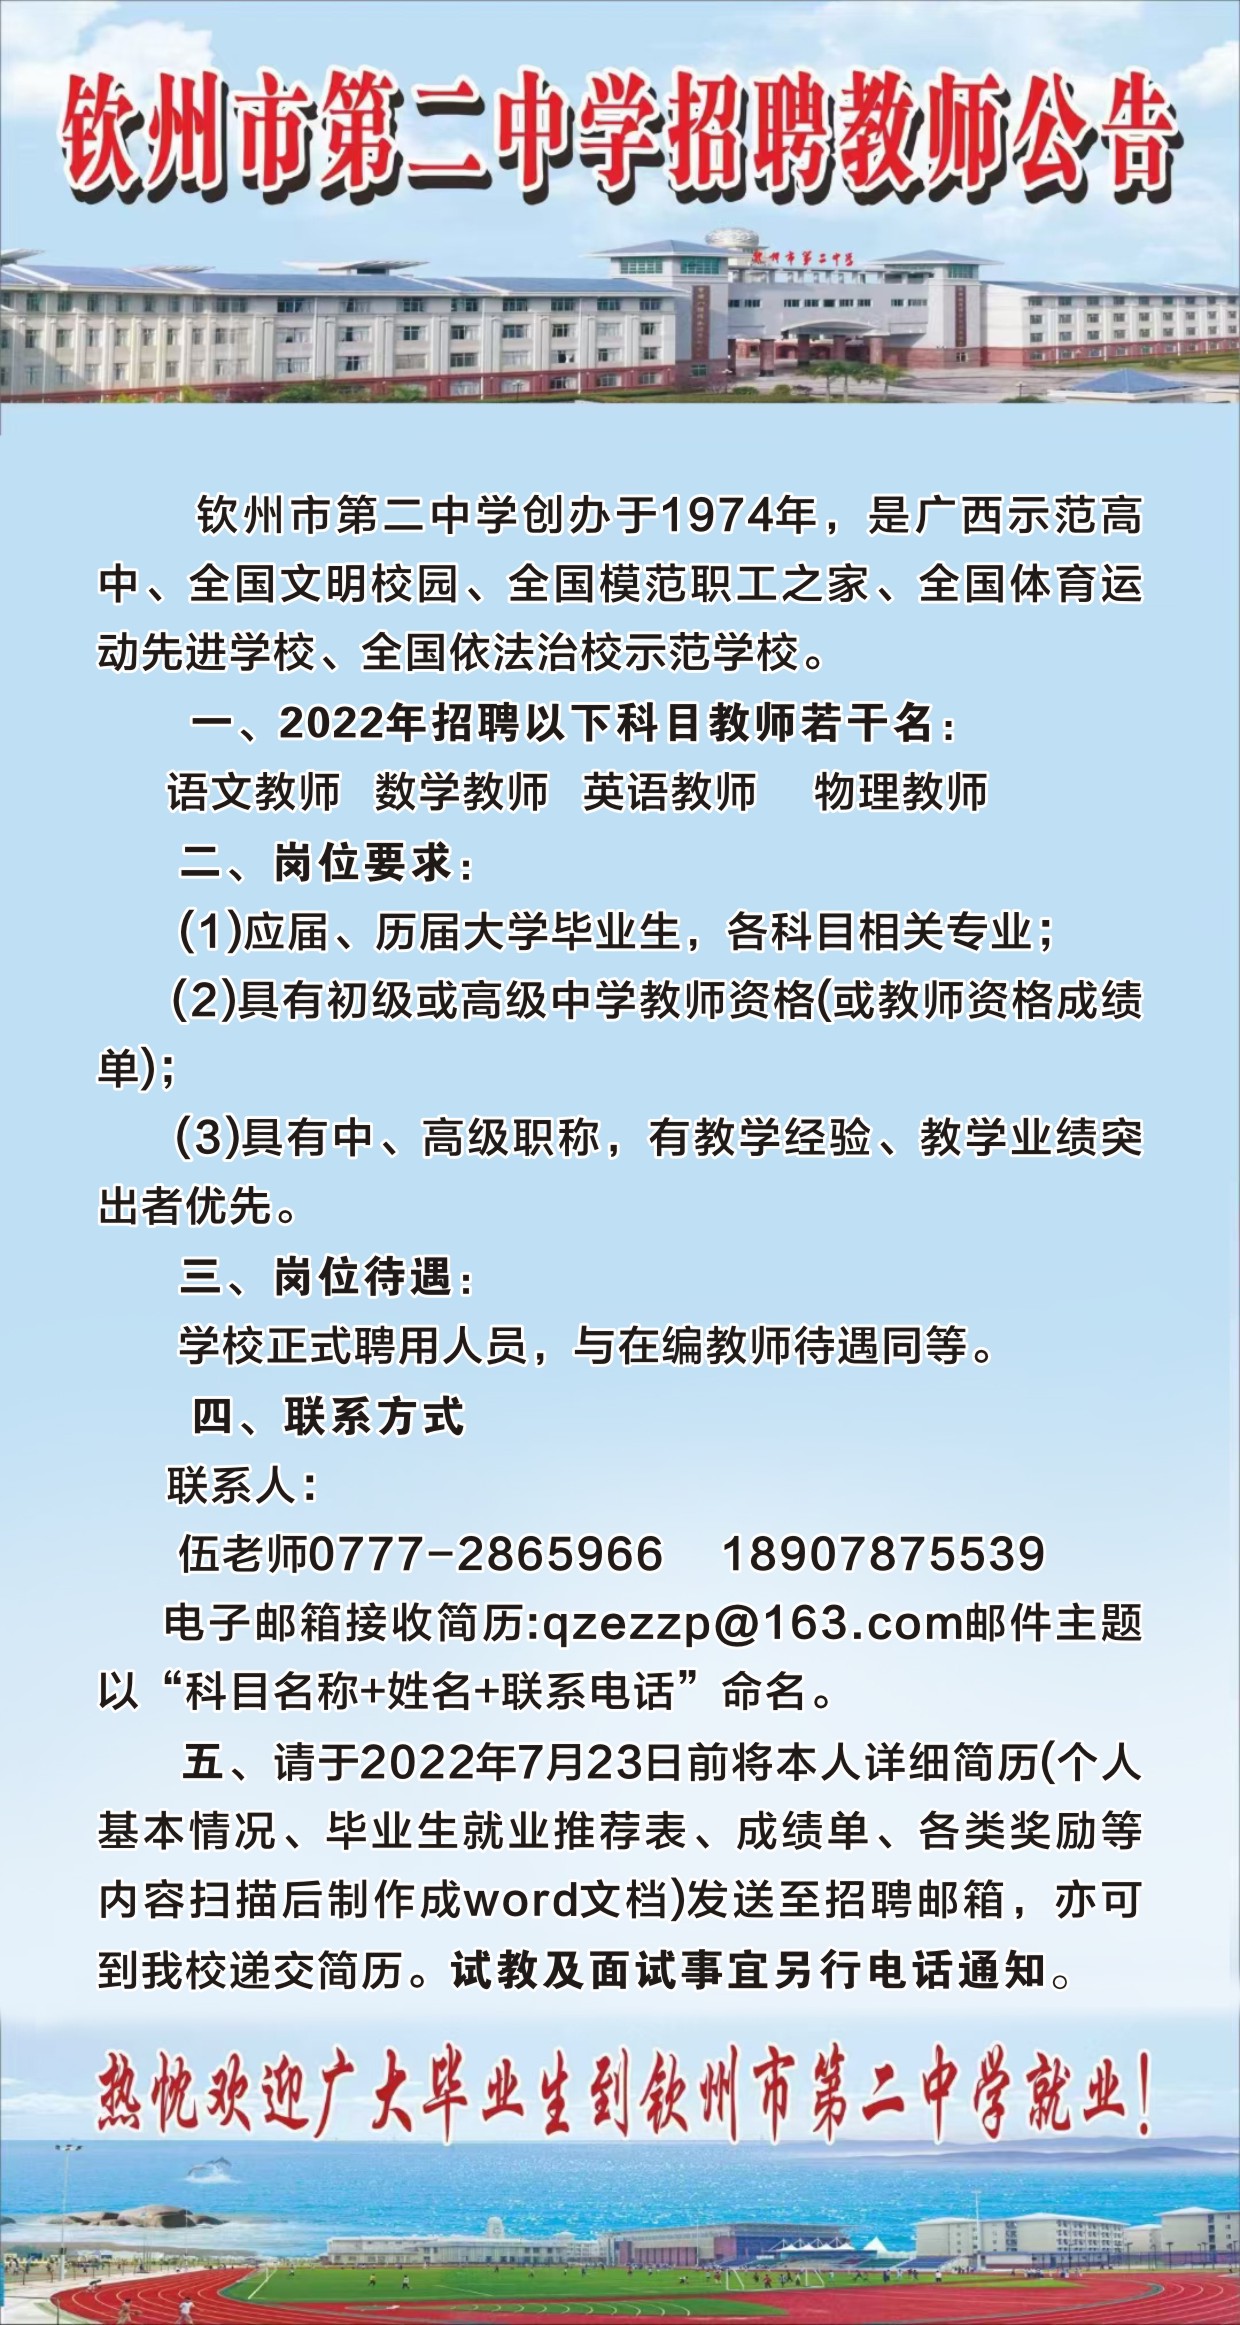 2022 年宝威体育（中国）集团有限公司招聘教师公告